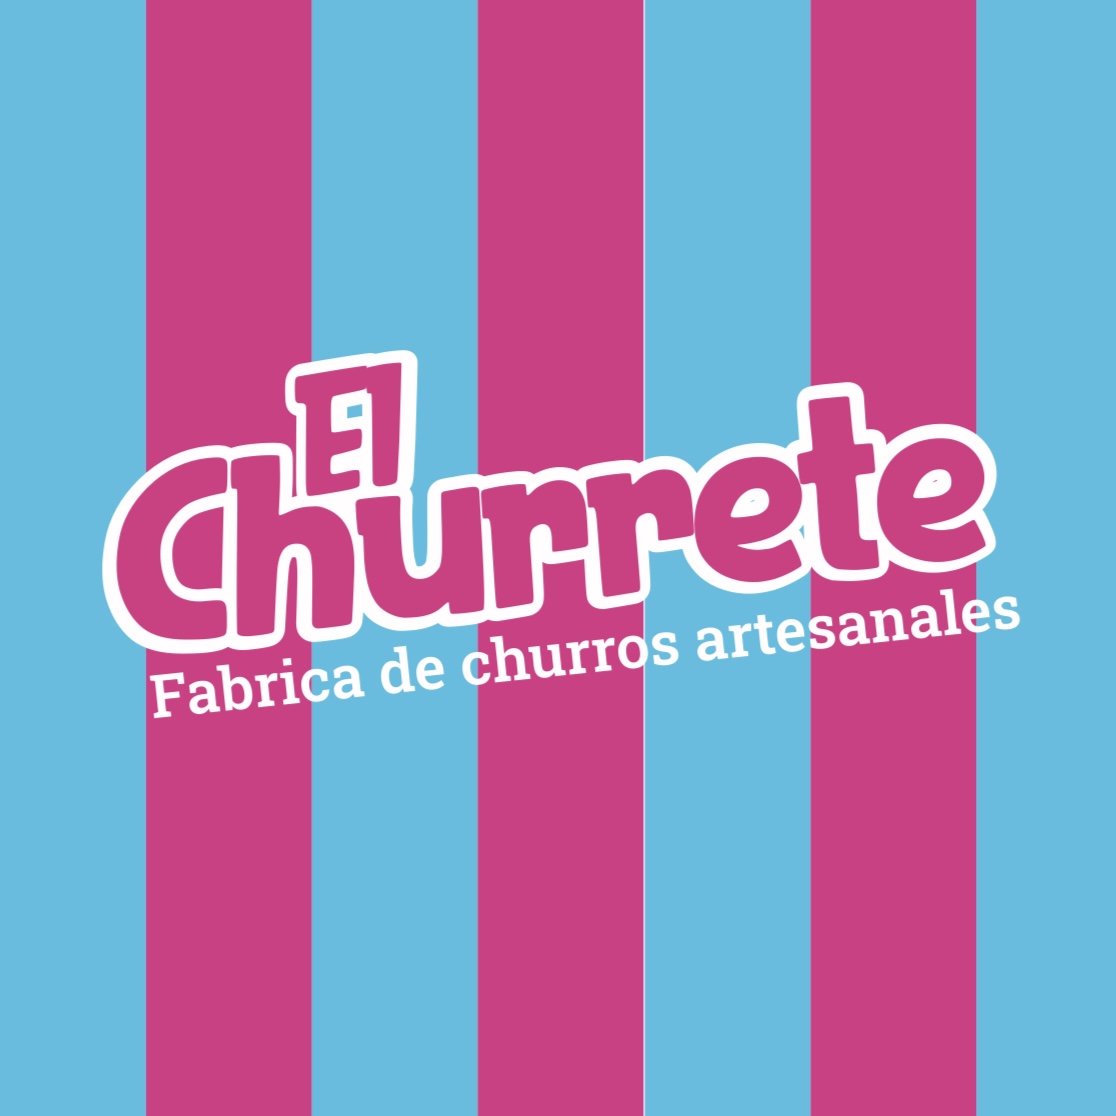 El Churrete